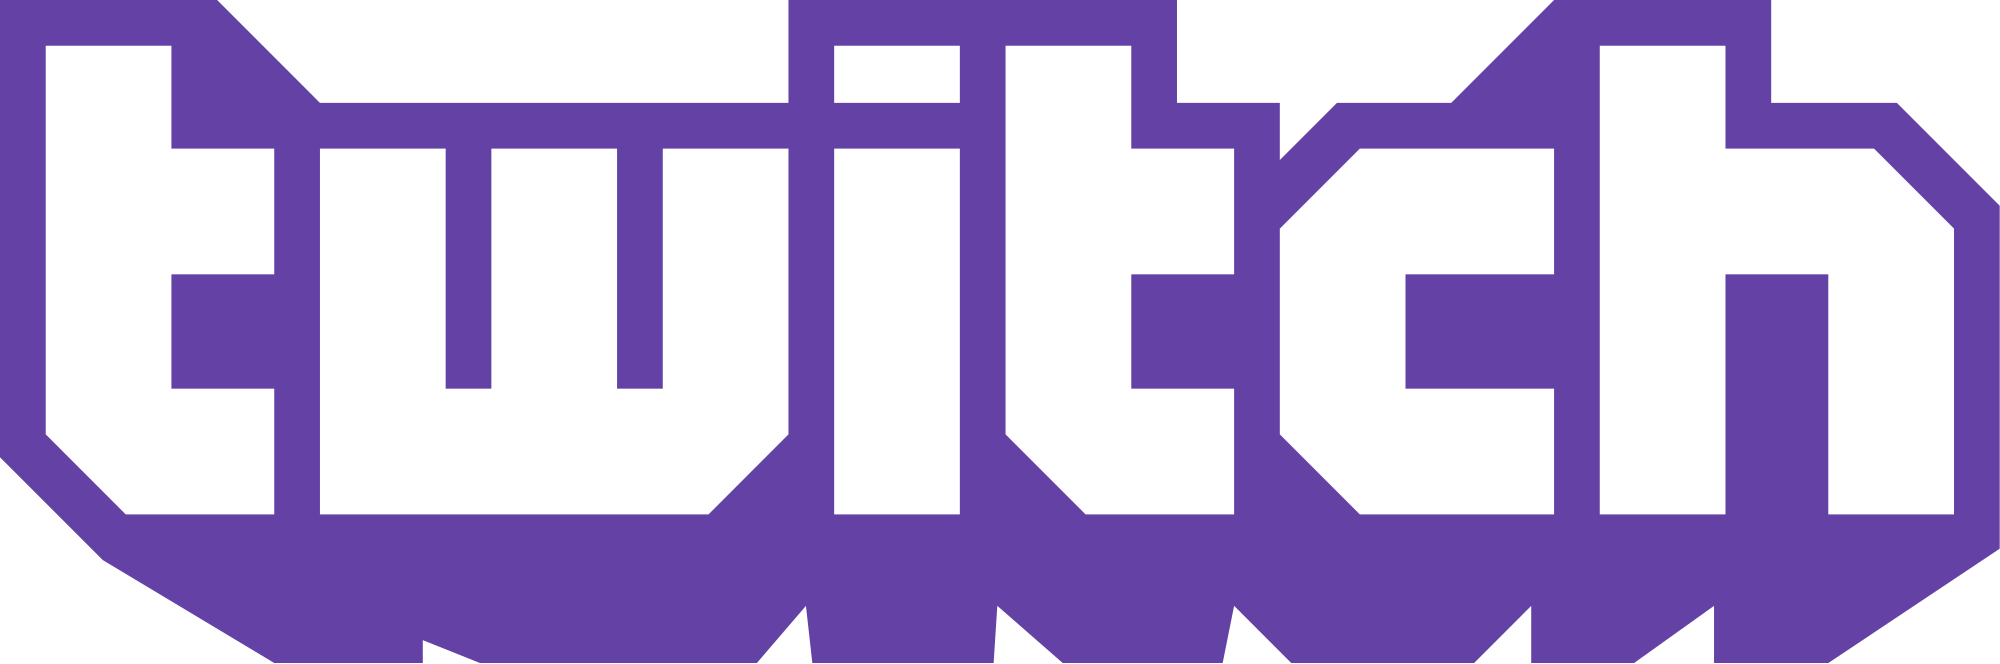 Twitch标志